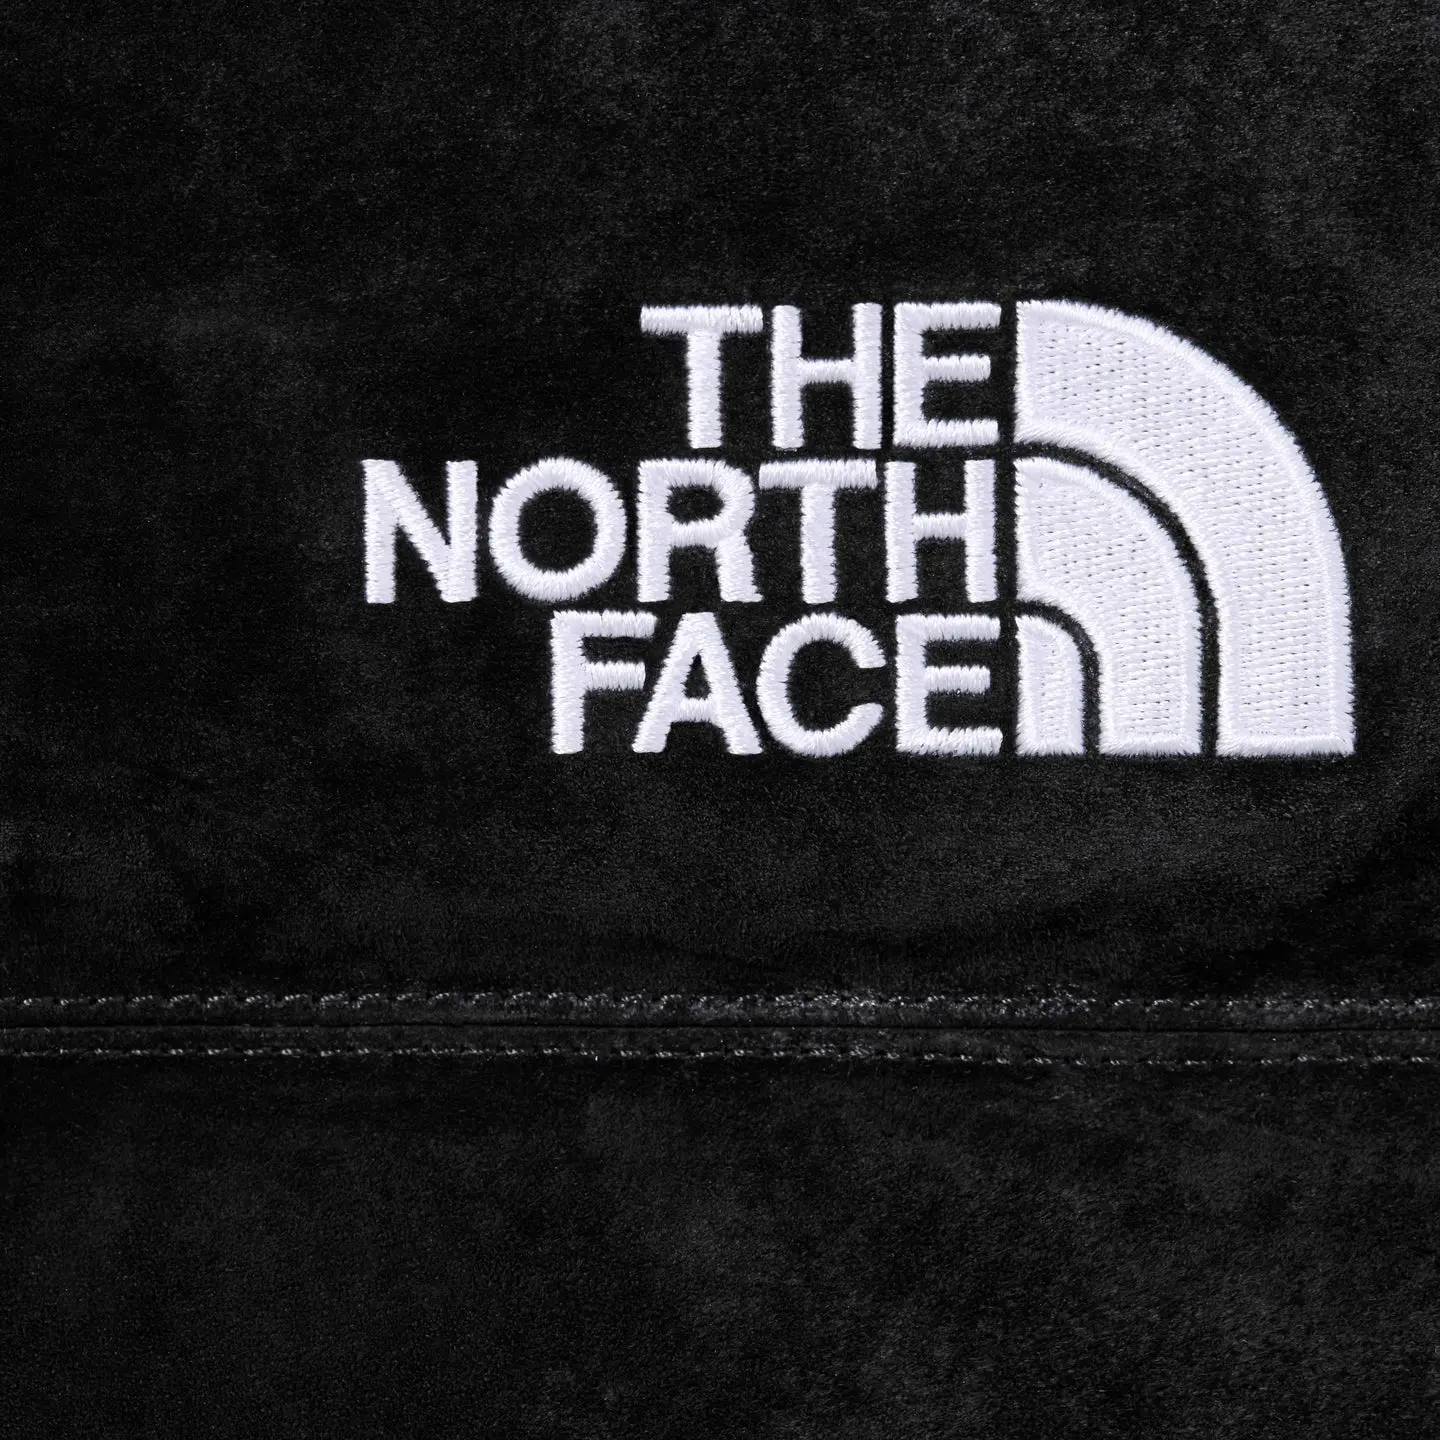 Supreme®/The North Face® Suede Nuptse Jacket